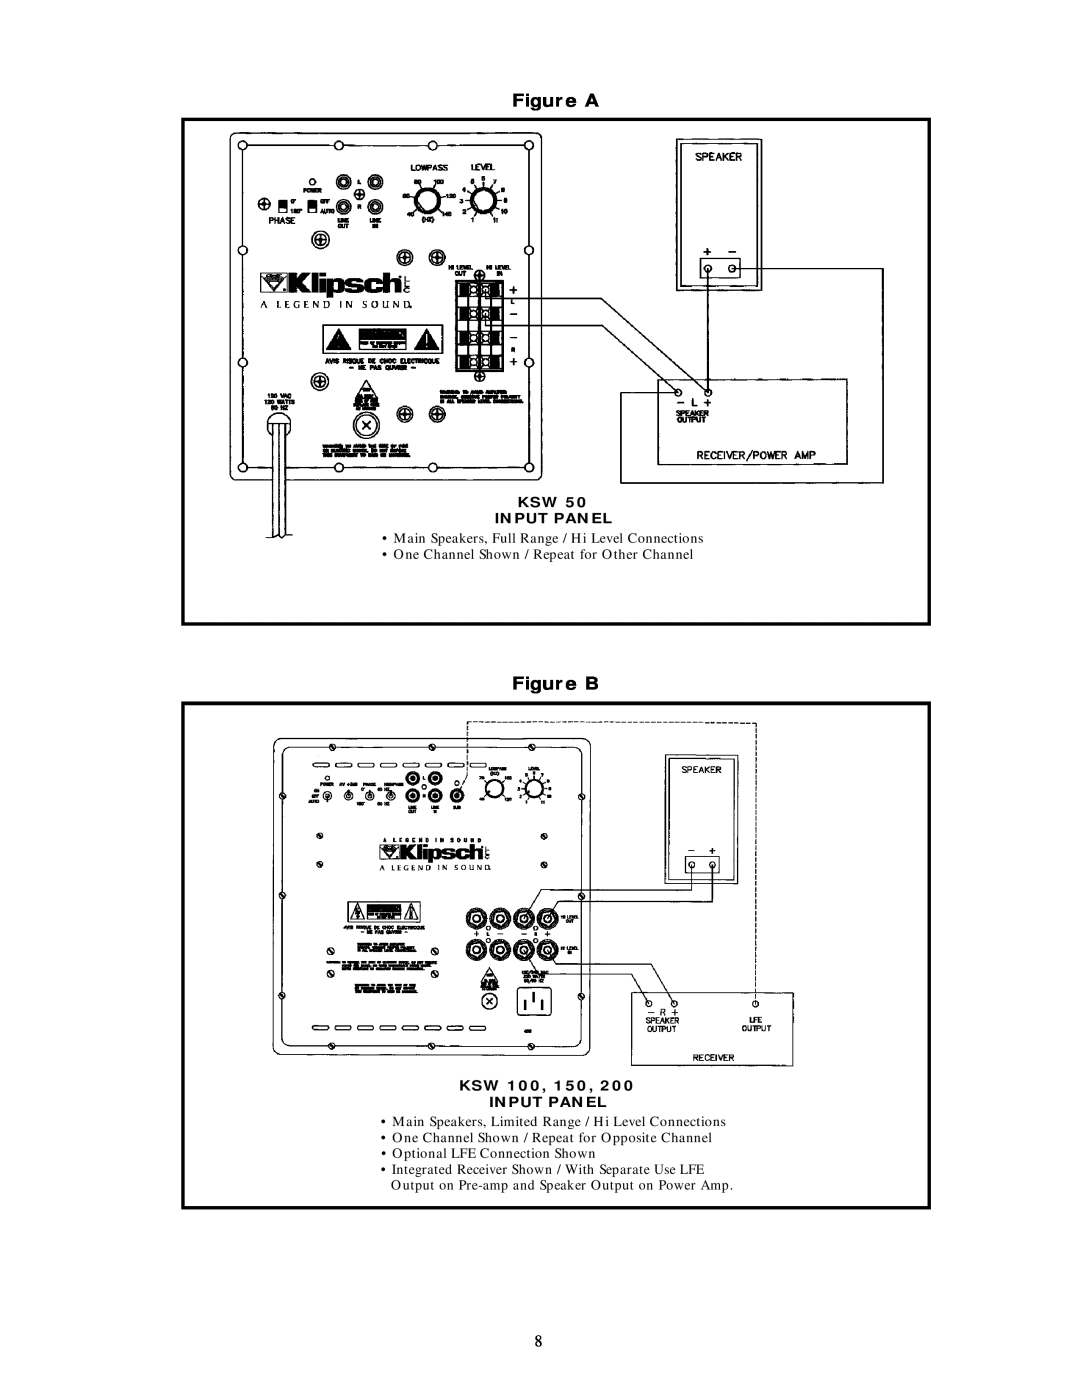 Klipsch K S W 1 5 0, 5M0198 warranty Figure A, Figure B, Ksw Input Panel, Main Speakers, Full Range / Hi Level Connections 